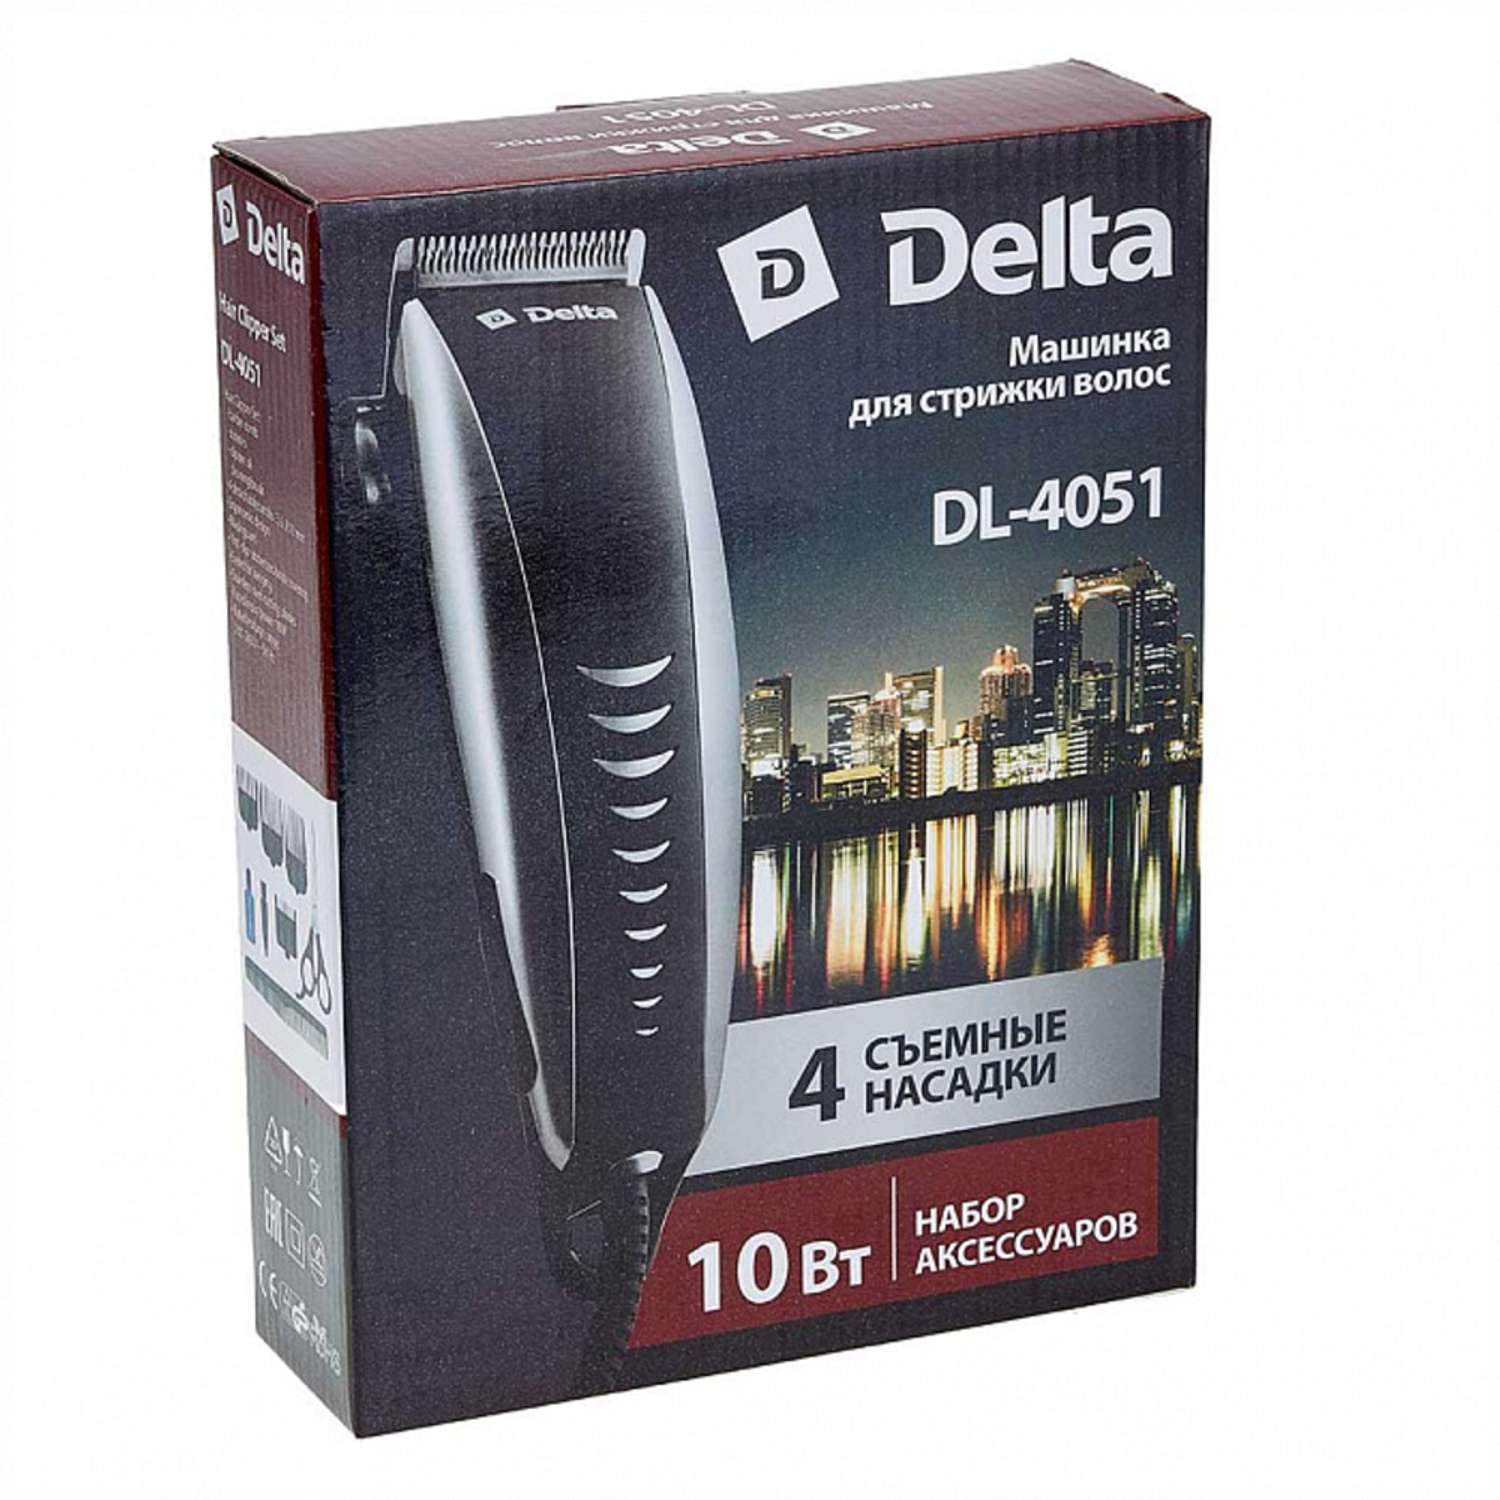 Машинка для стрижки волос Delta DL-4051 серебристый10Вт 4 съемных гребня - фото 2